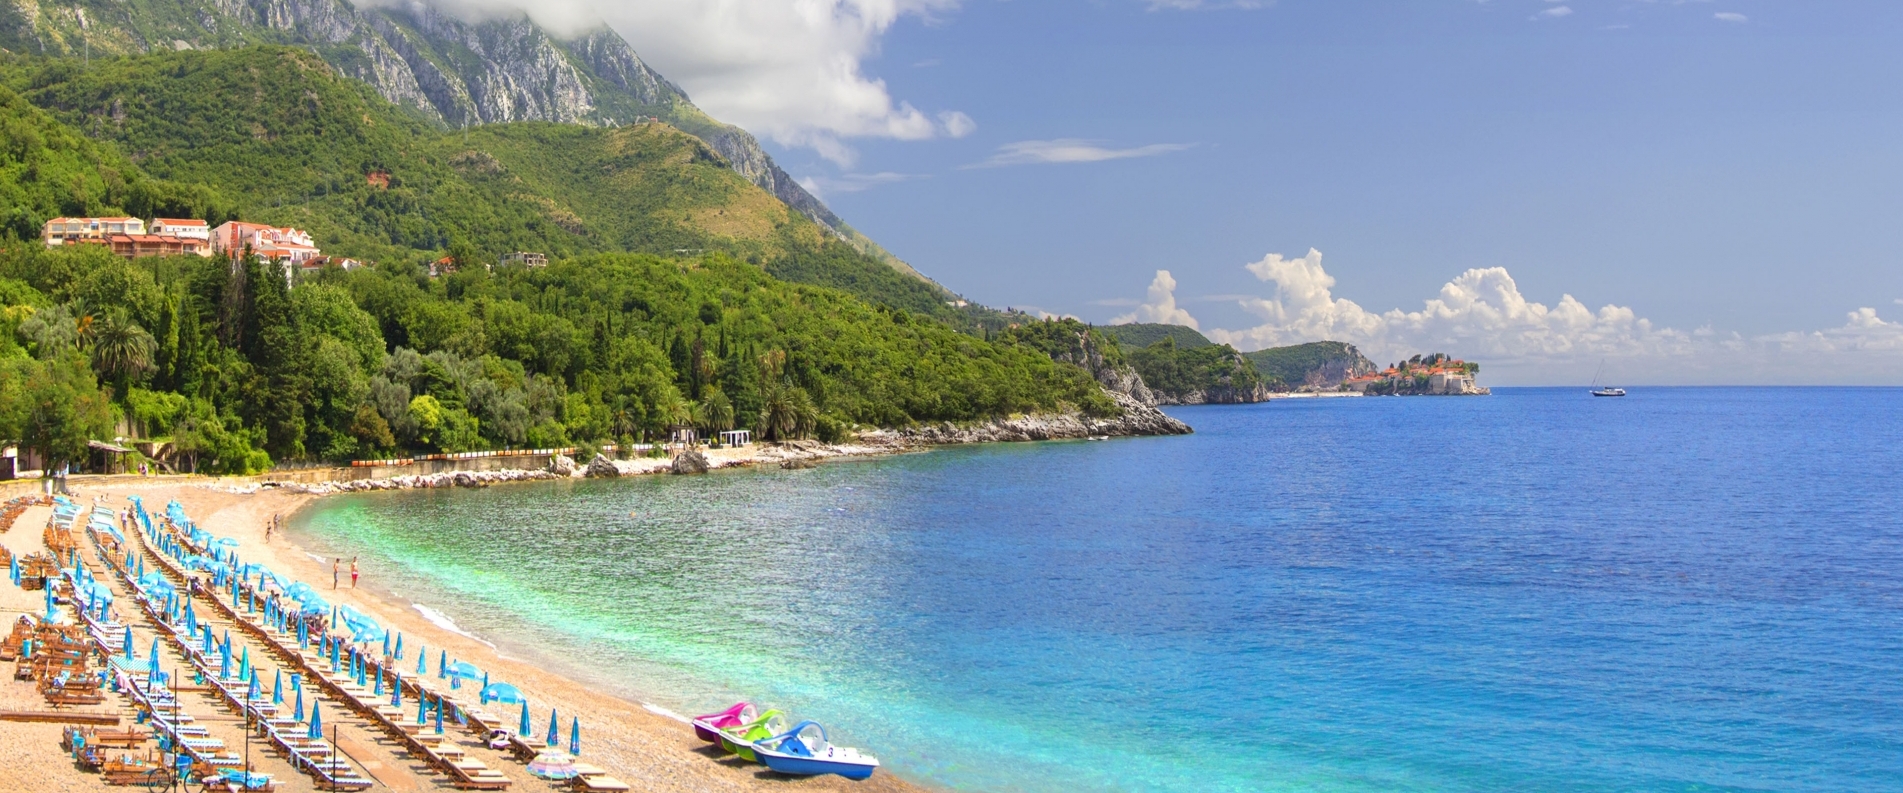 Top 10: Best Beaches in Montenegro